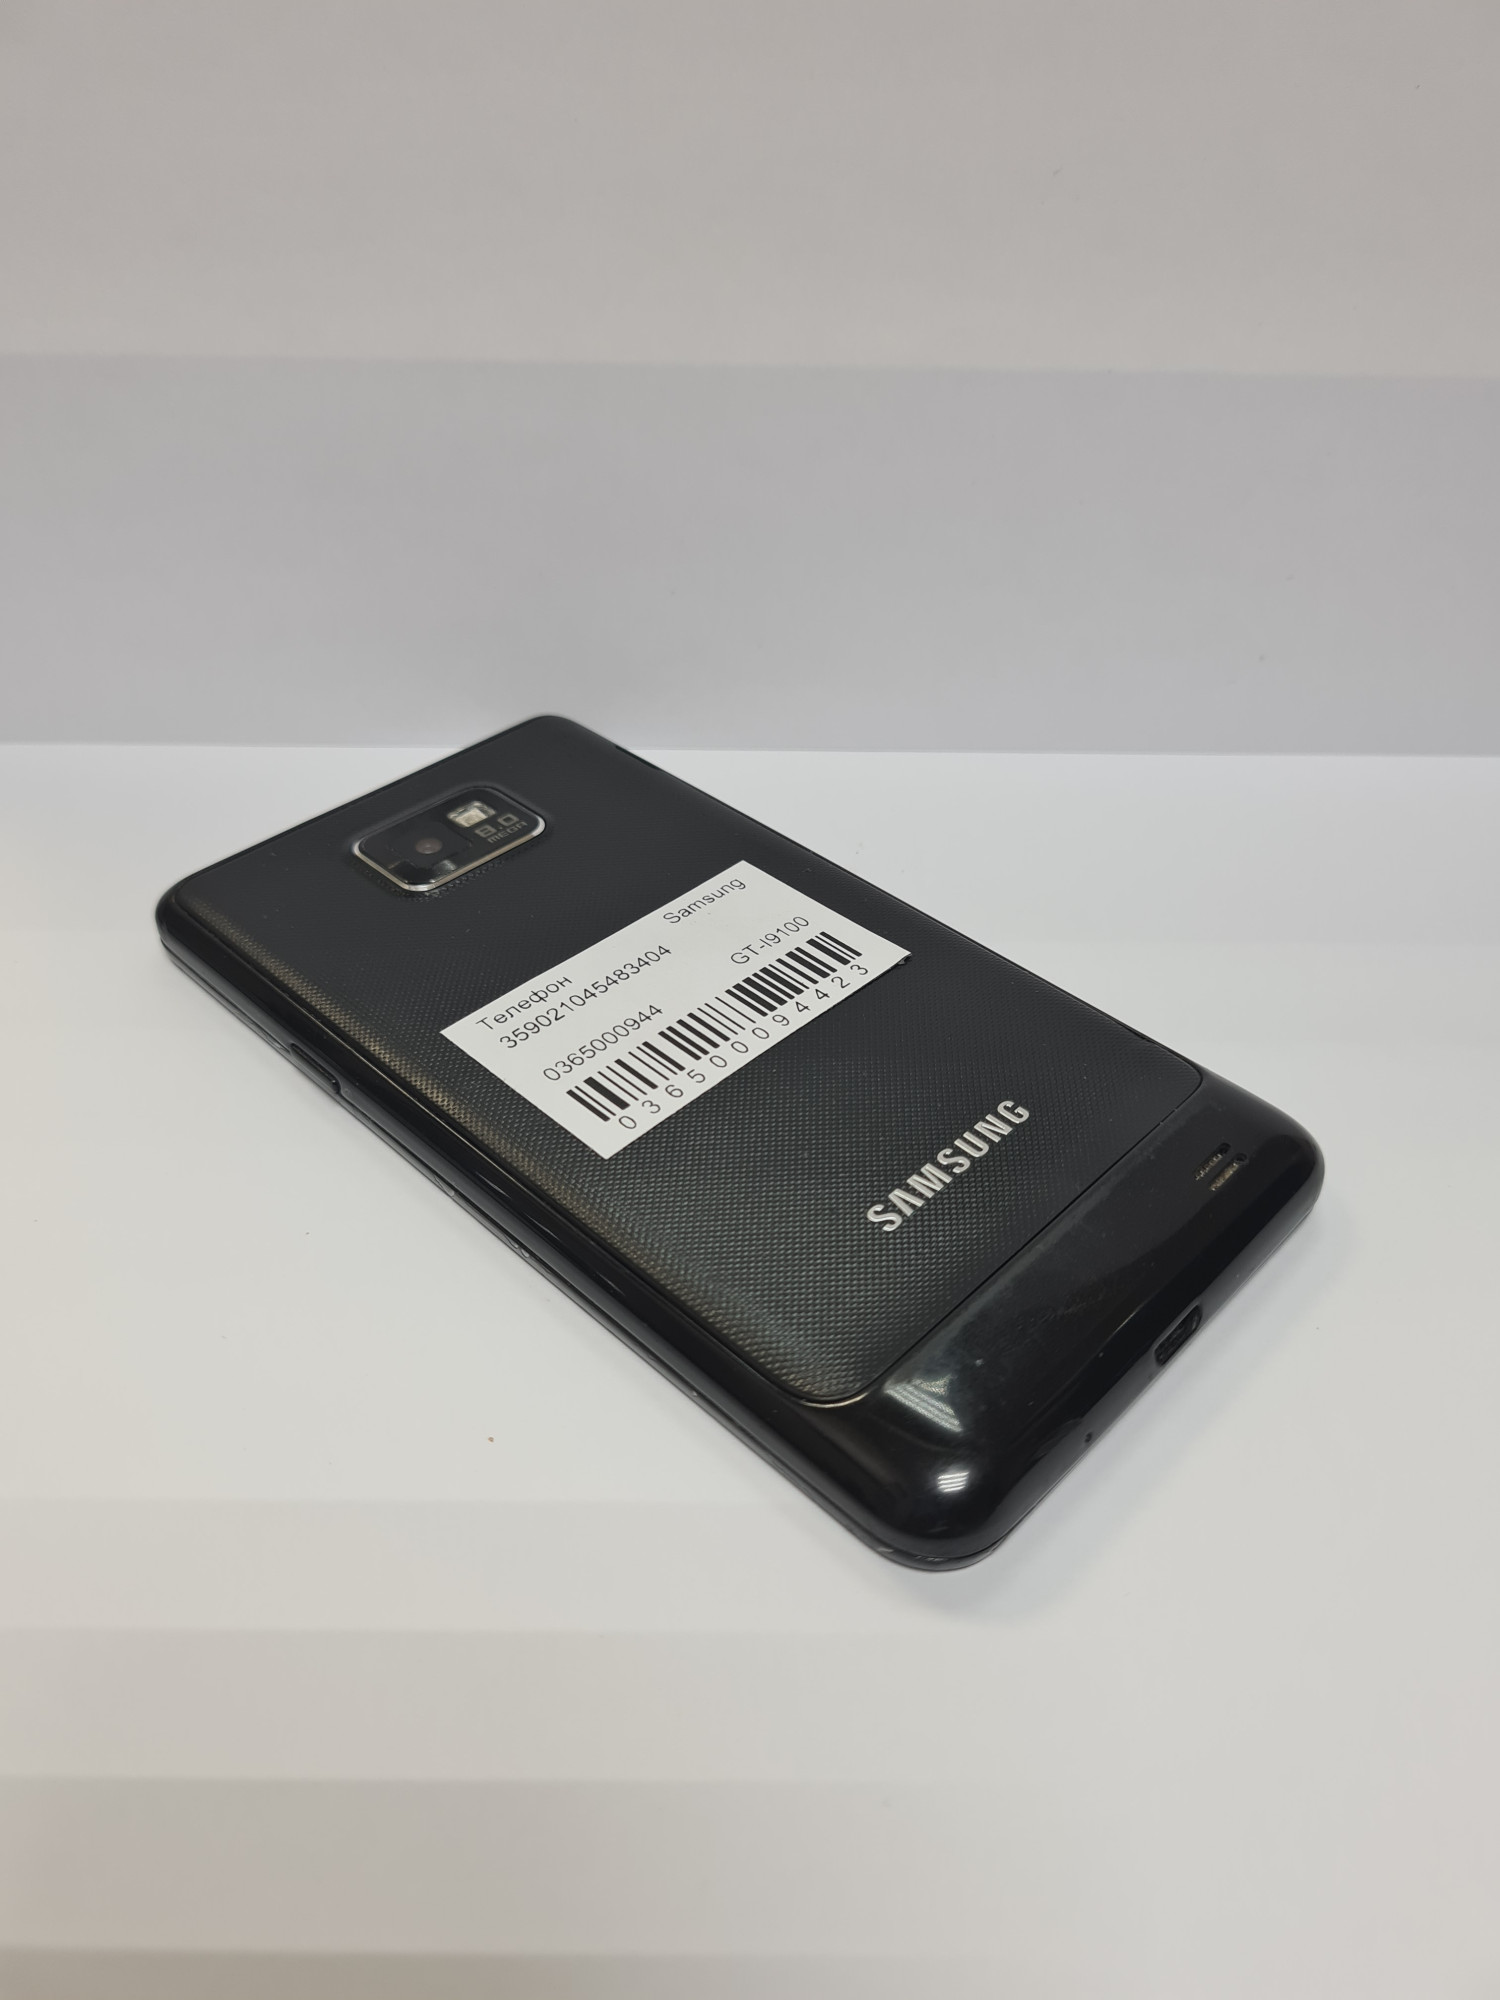 Samsung Galaxy S2 (GT-I9100) 1/16Gb  2